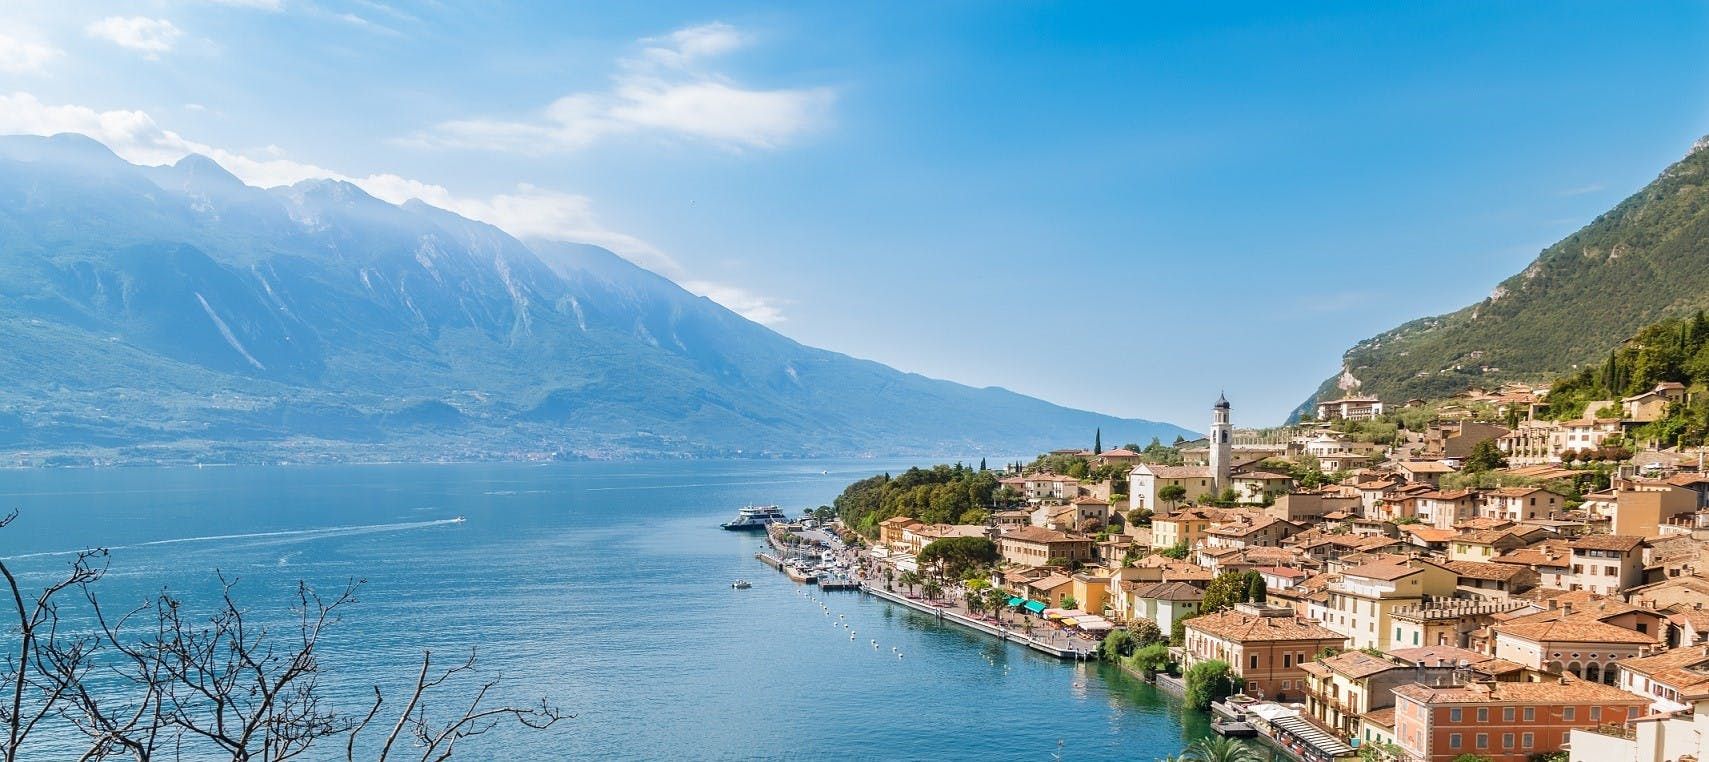 Imagen del tour: Excursión de día completo al lago de Garda, autobús y guía turístico